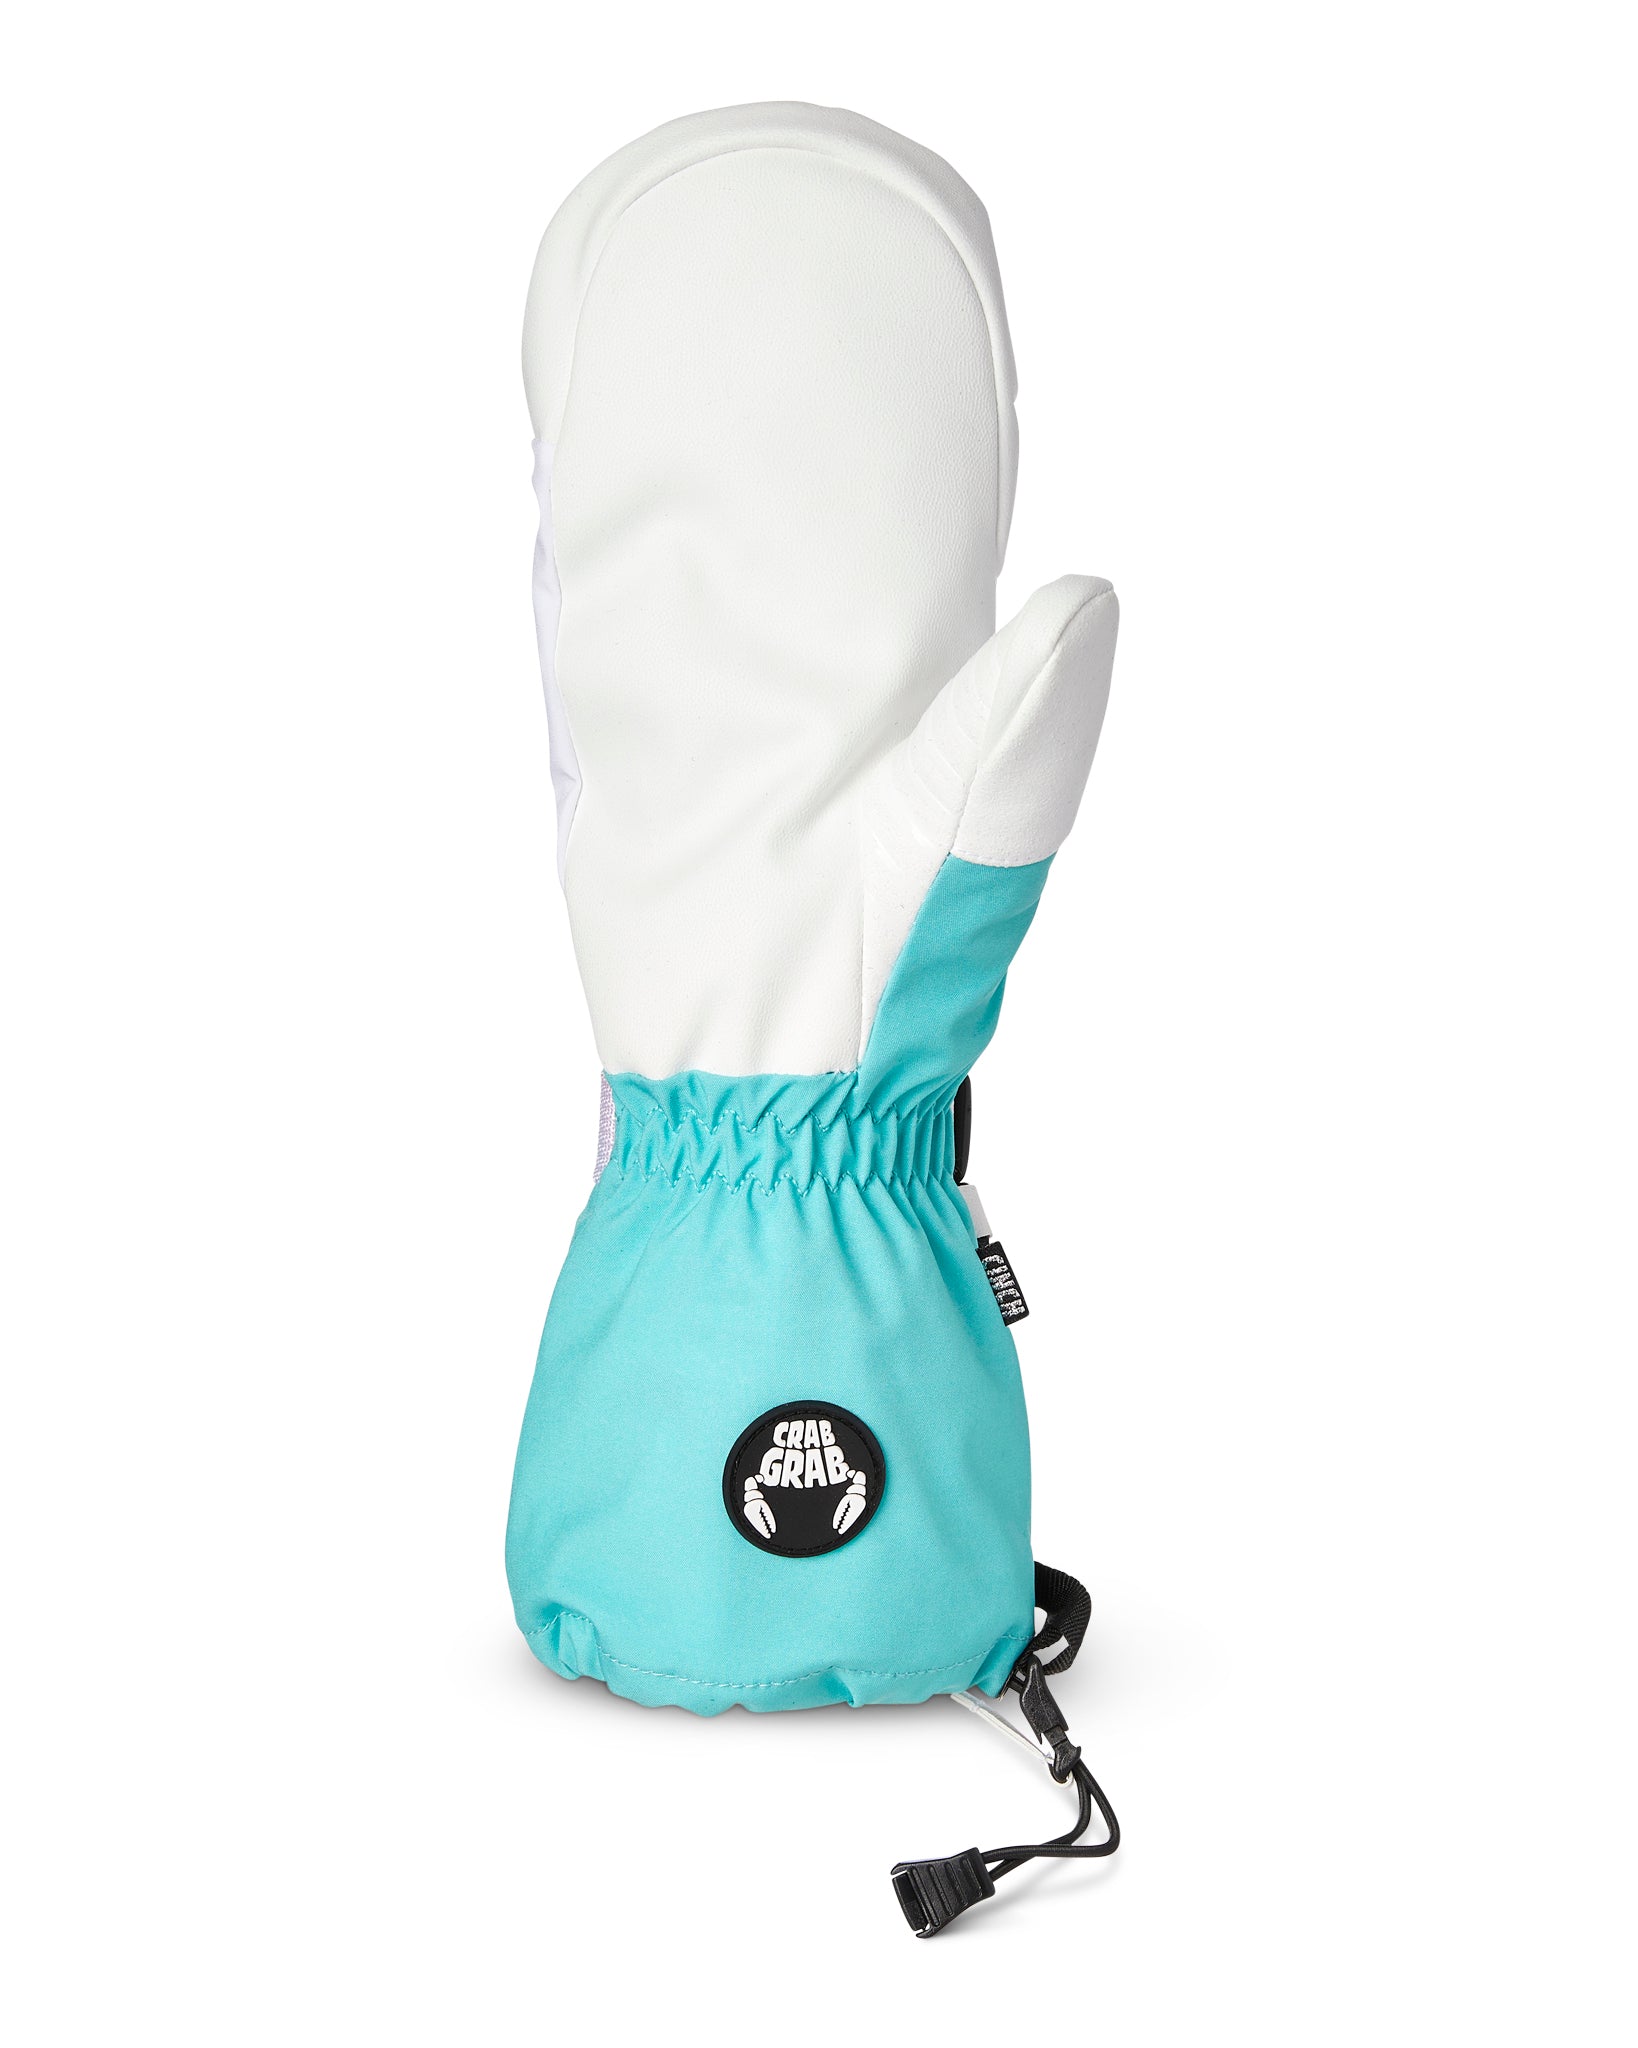 Crab Grab Snuggler Women Mitt Cream and Tan Women's ski gloves : Snowleader